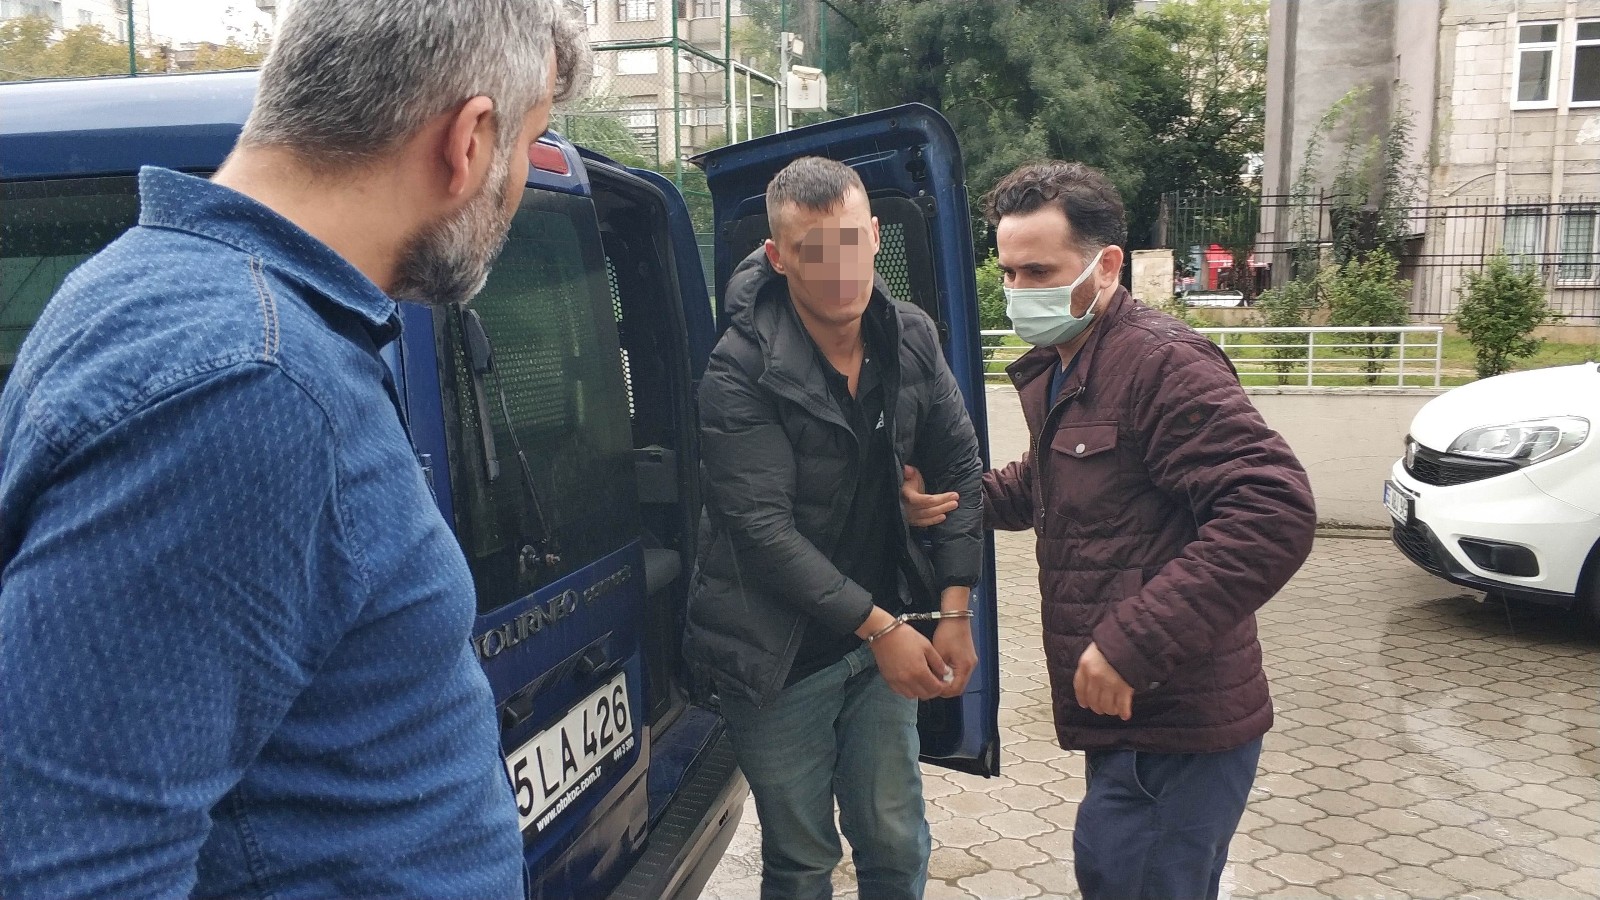 Kız arkadaşının evini taşladı, polisler yakalayınca Atatürk'e hakaretten tutuklandı
